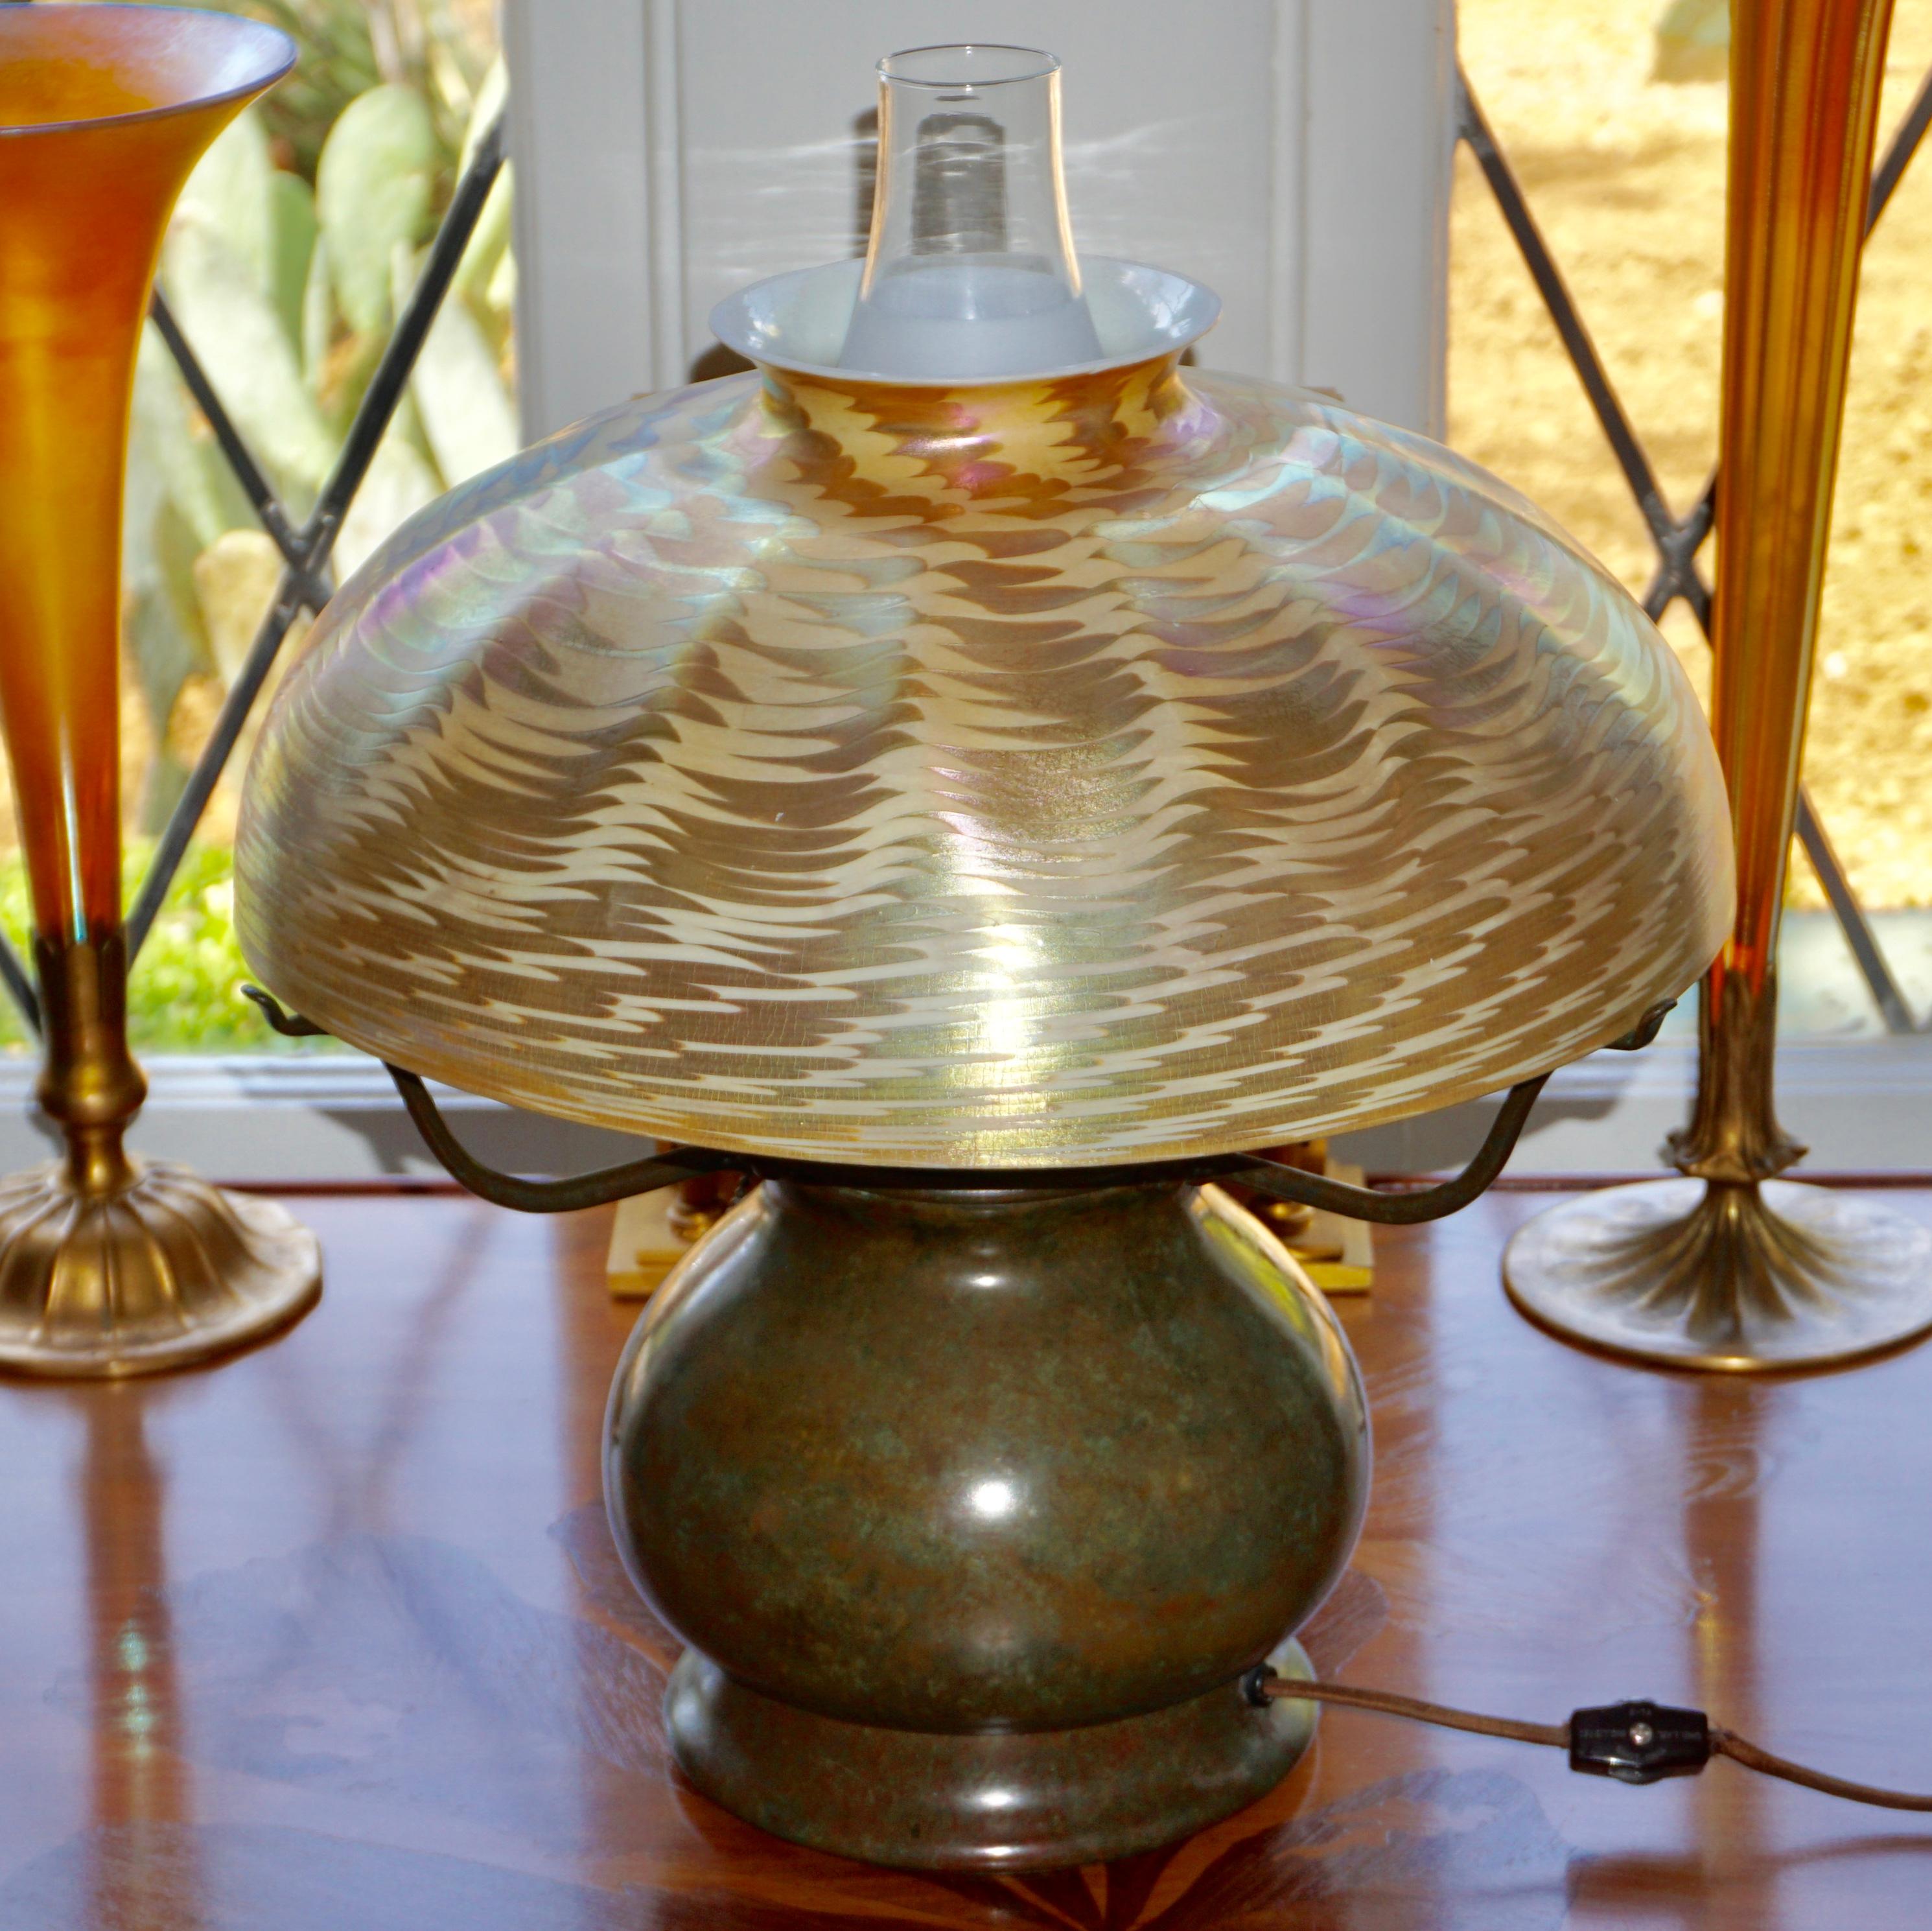 Cette lampe de table Tiffany Studios a un très grand et magnifique abat-jour en damasquine or et argent. Le motif damassé se détache sur un fond de couleur crème et les irisations argentées et dorées présentent de jolis éclats de rose, d'orange et